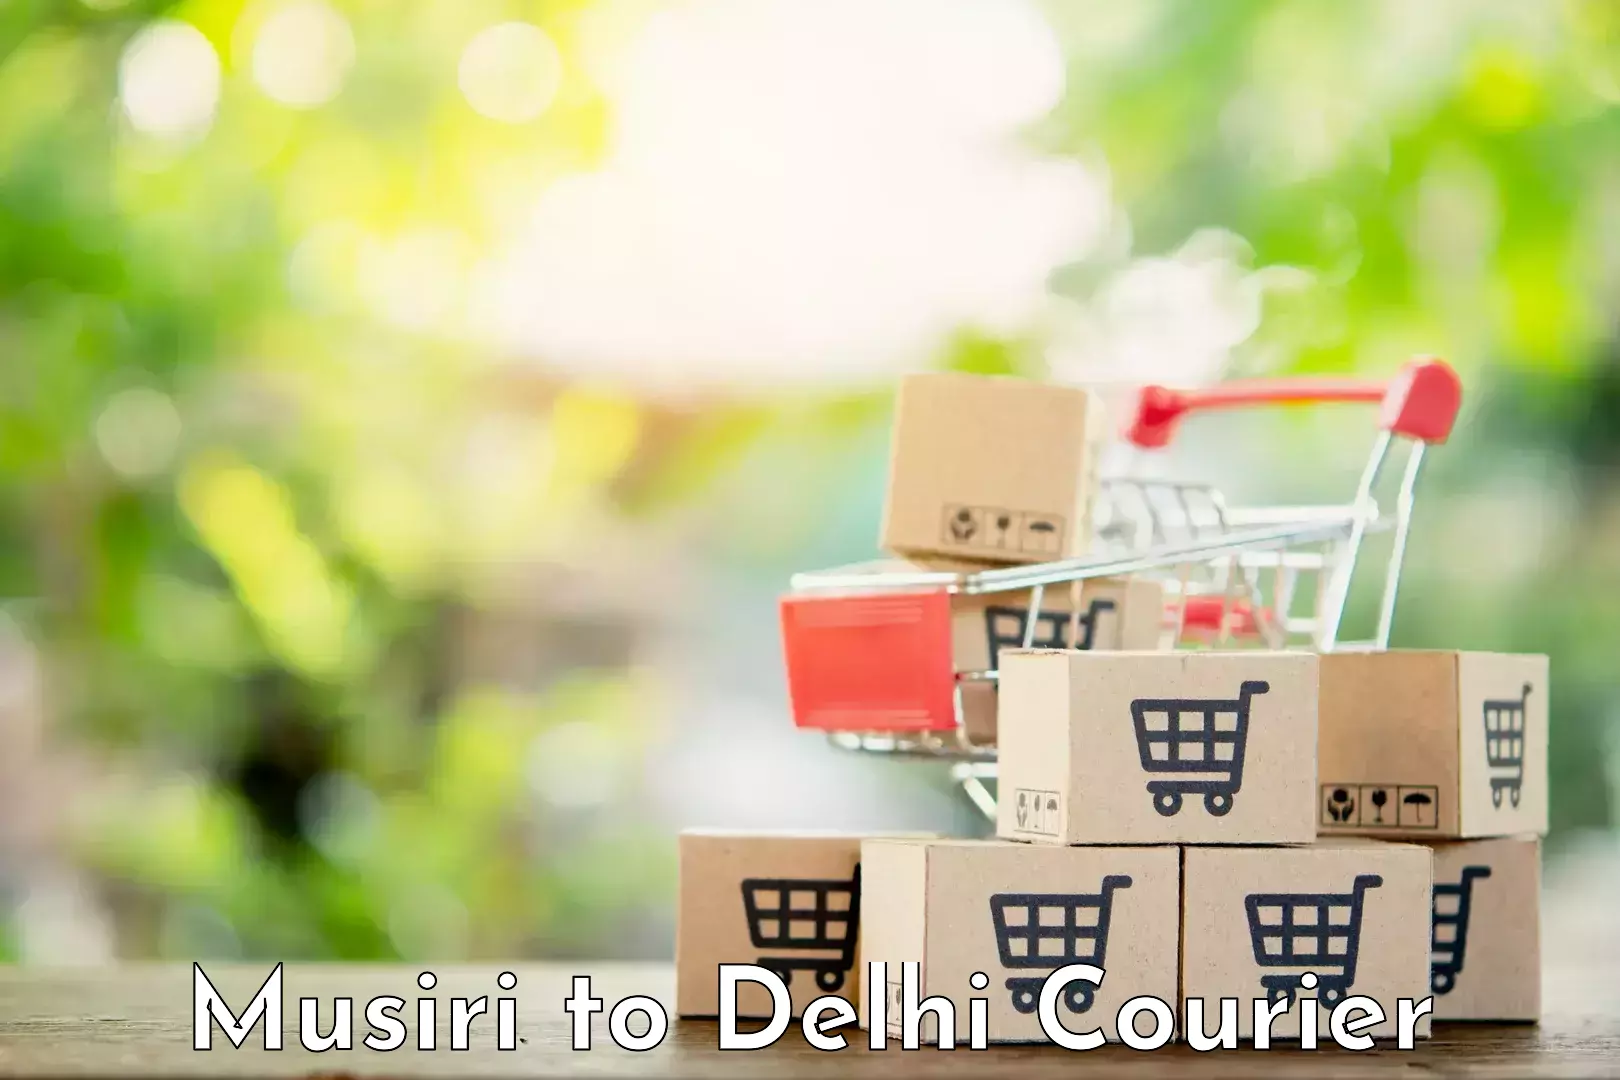 User-friendly delivery service Musiri to Delhi